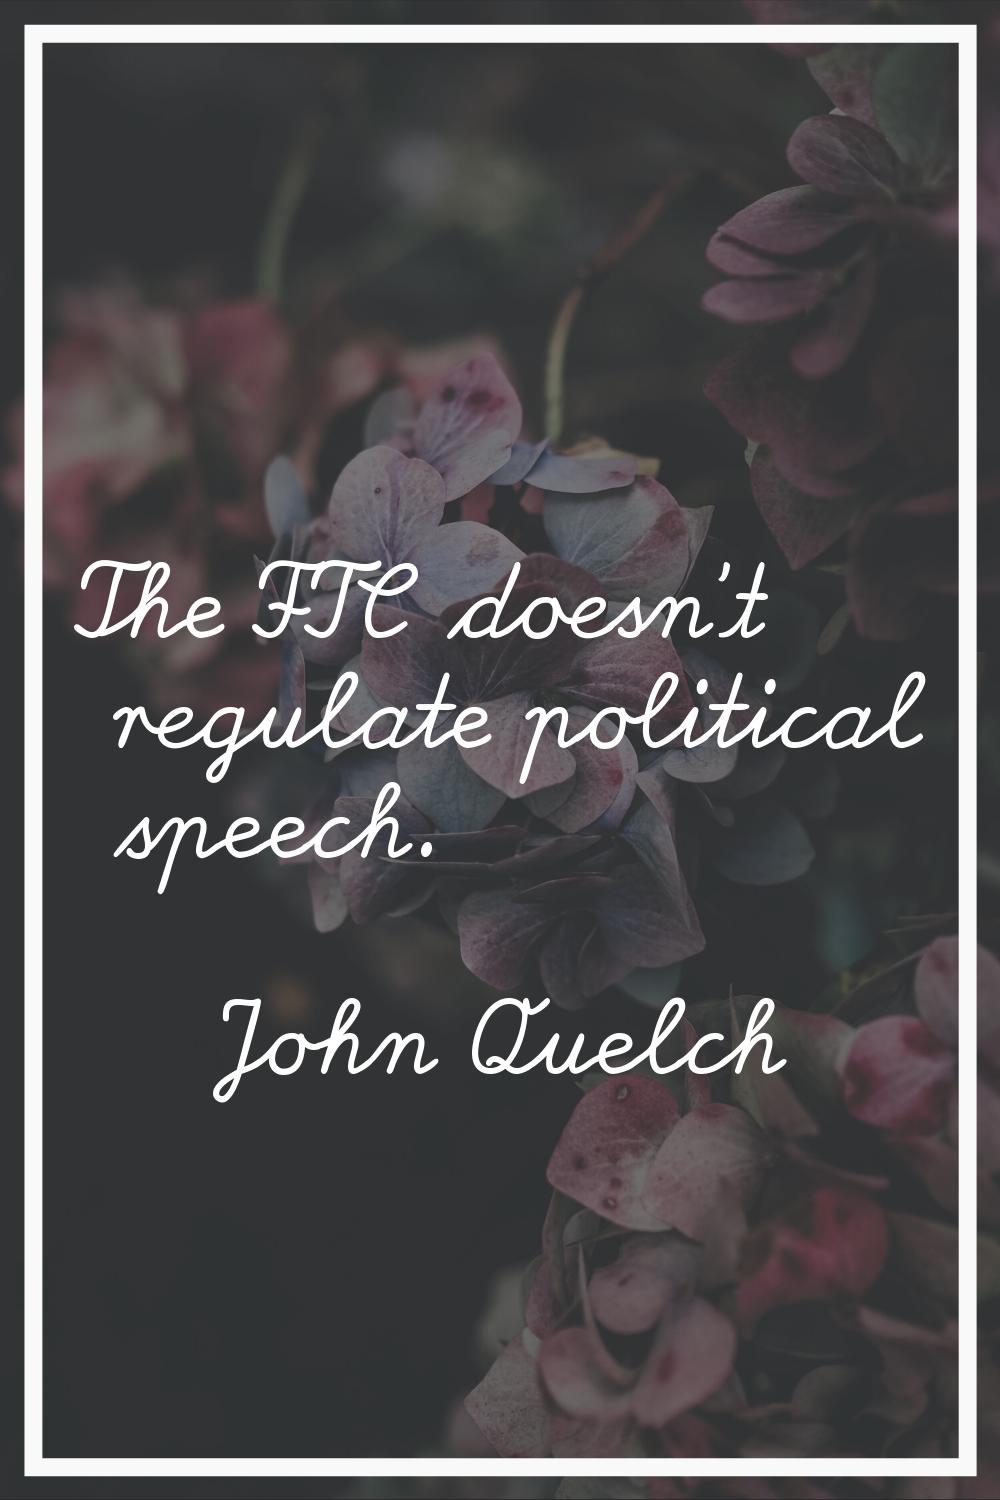 The FTC doesn't regulate political speech.